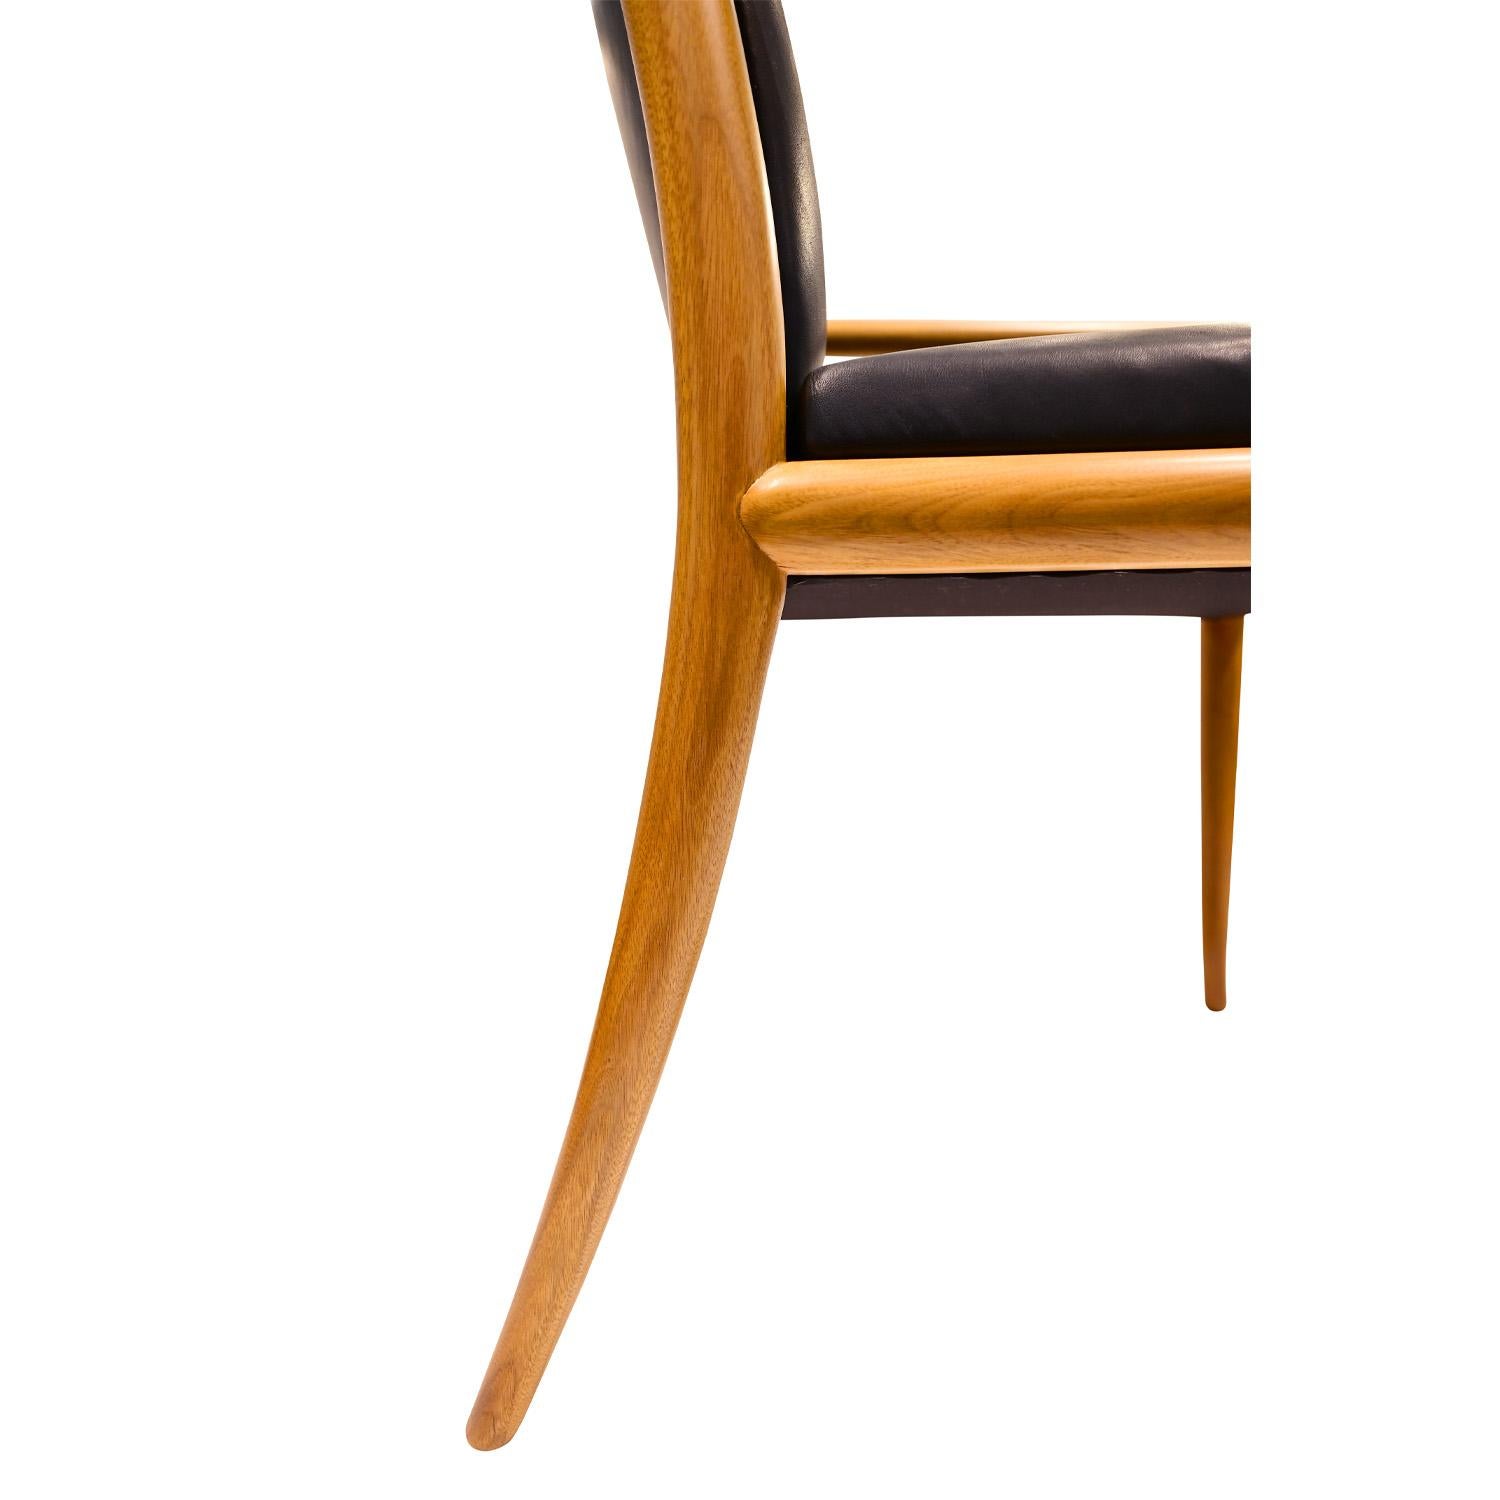 T.H. Robsjohn-Gibbings Elegant Set of 8 Dining Chairs 1950s For Sale 1